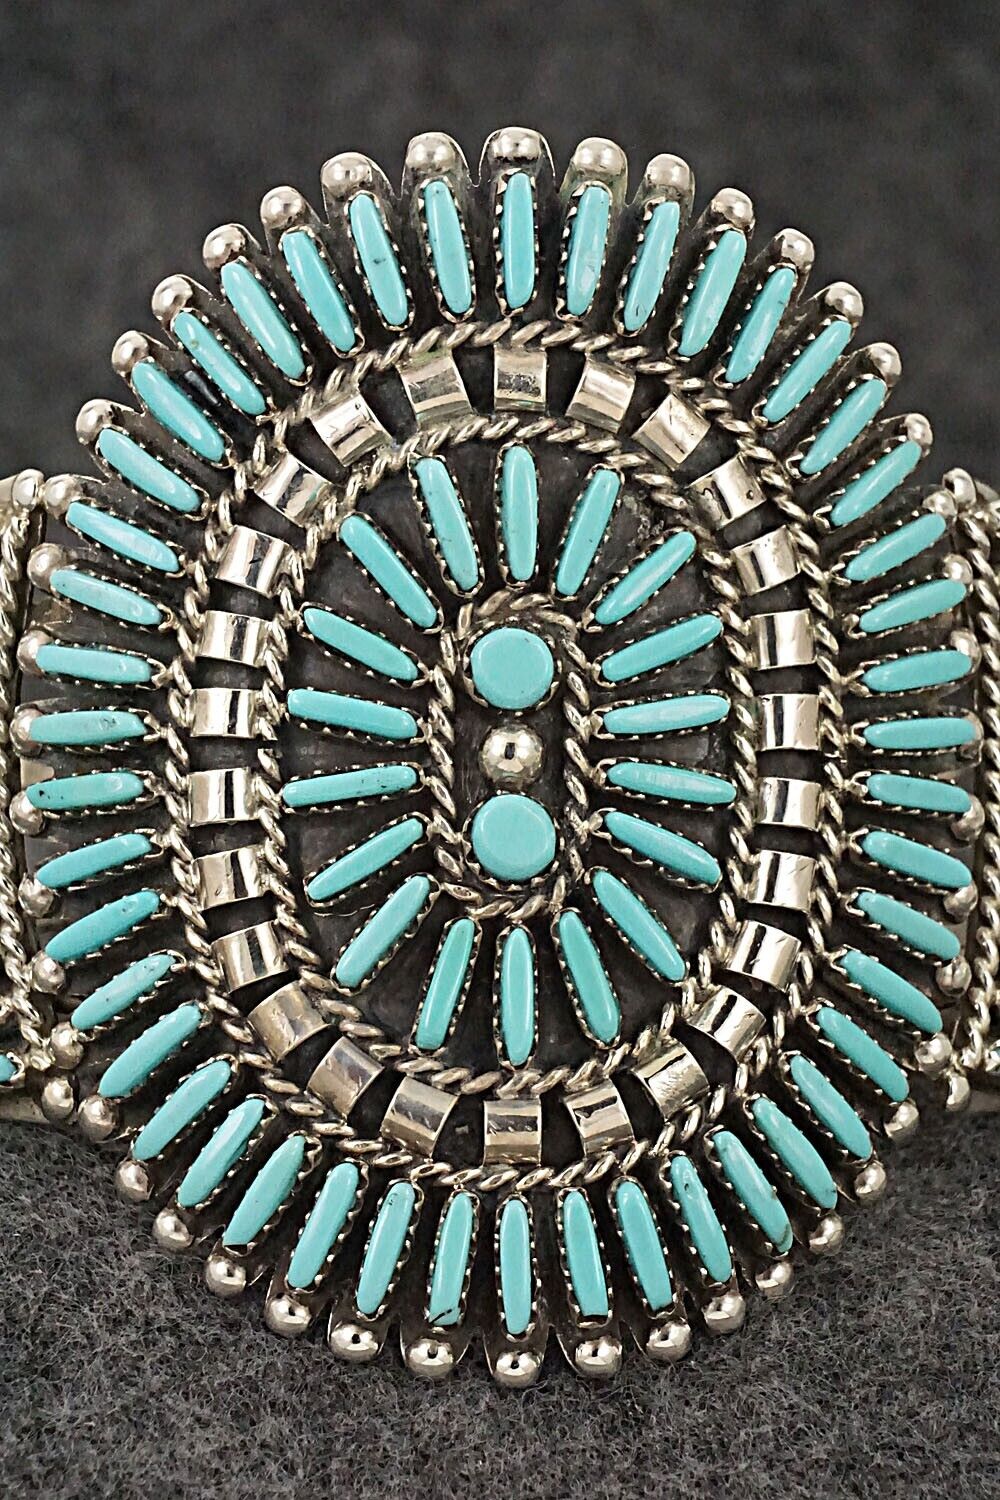 Turquoise & Sterling Silver Bracelet - Charlie John